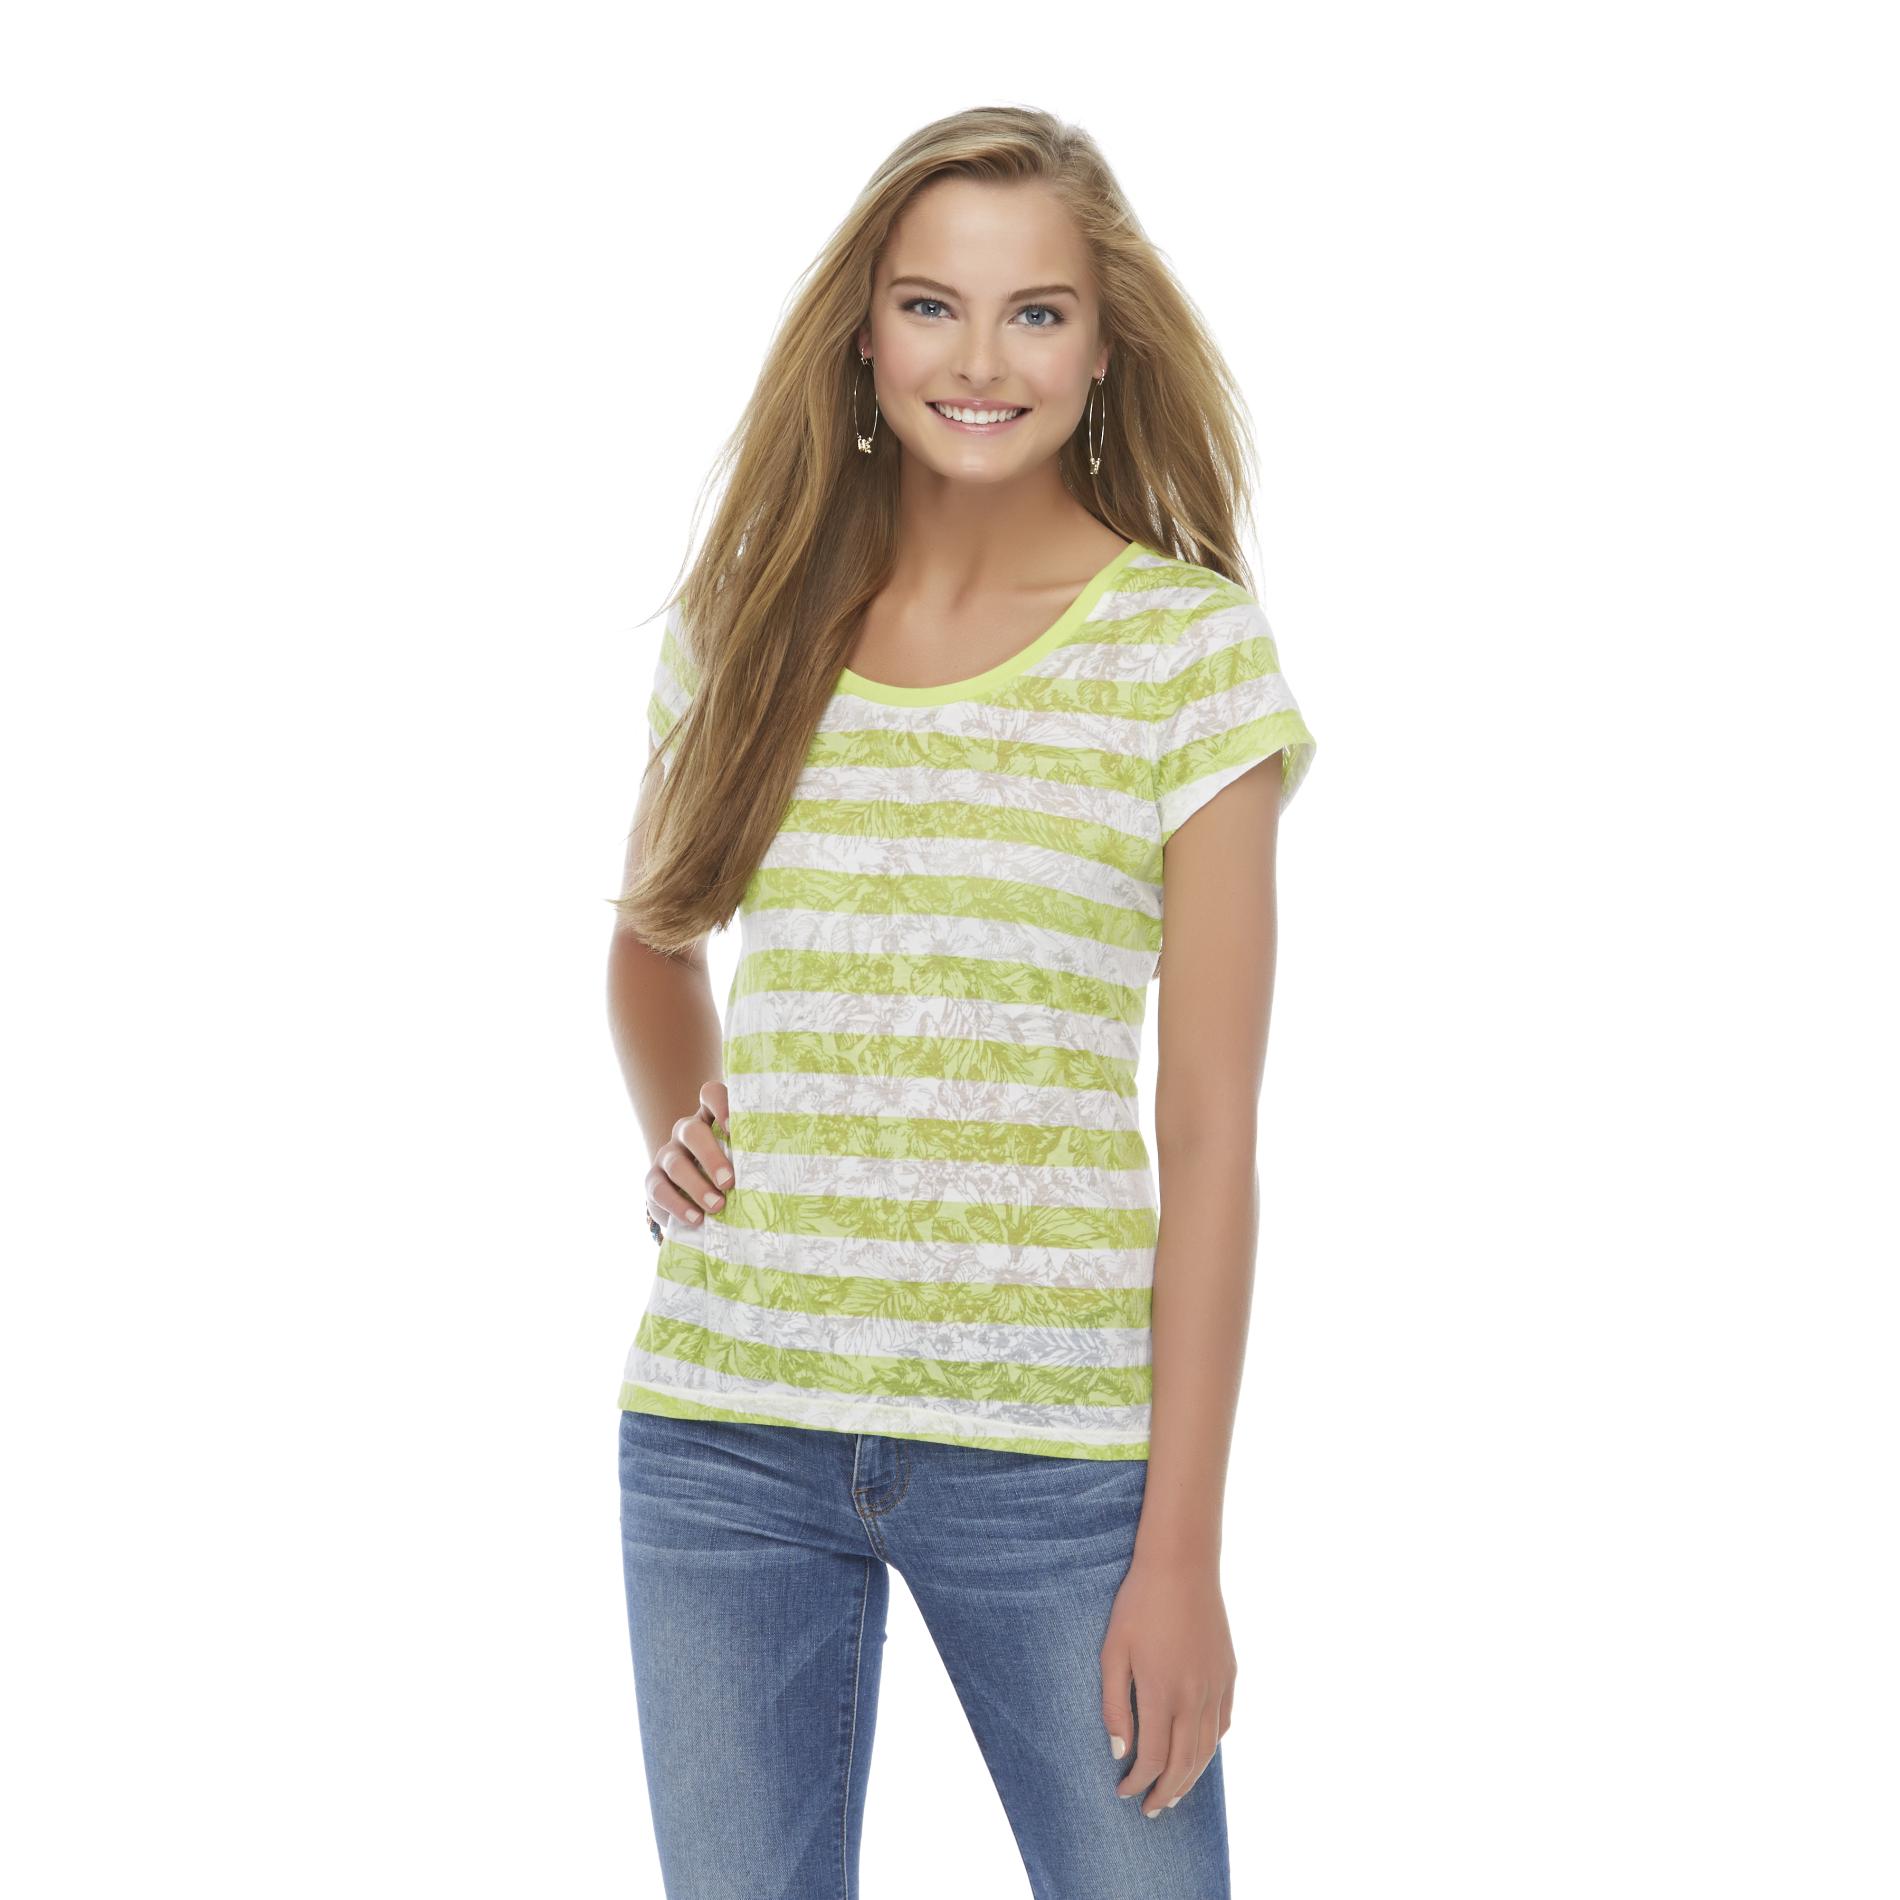 Joe Boxer Women's Burnout T-Shirt - Striped & Floral